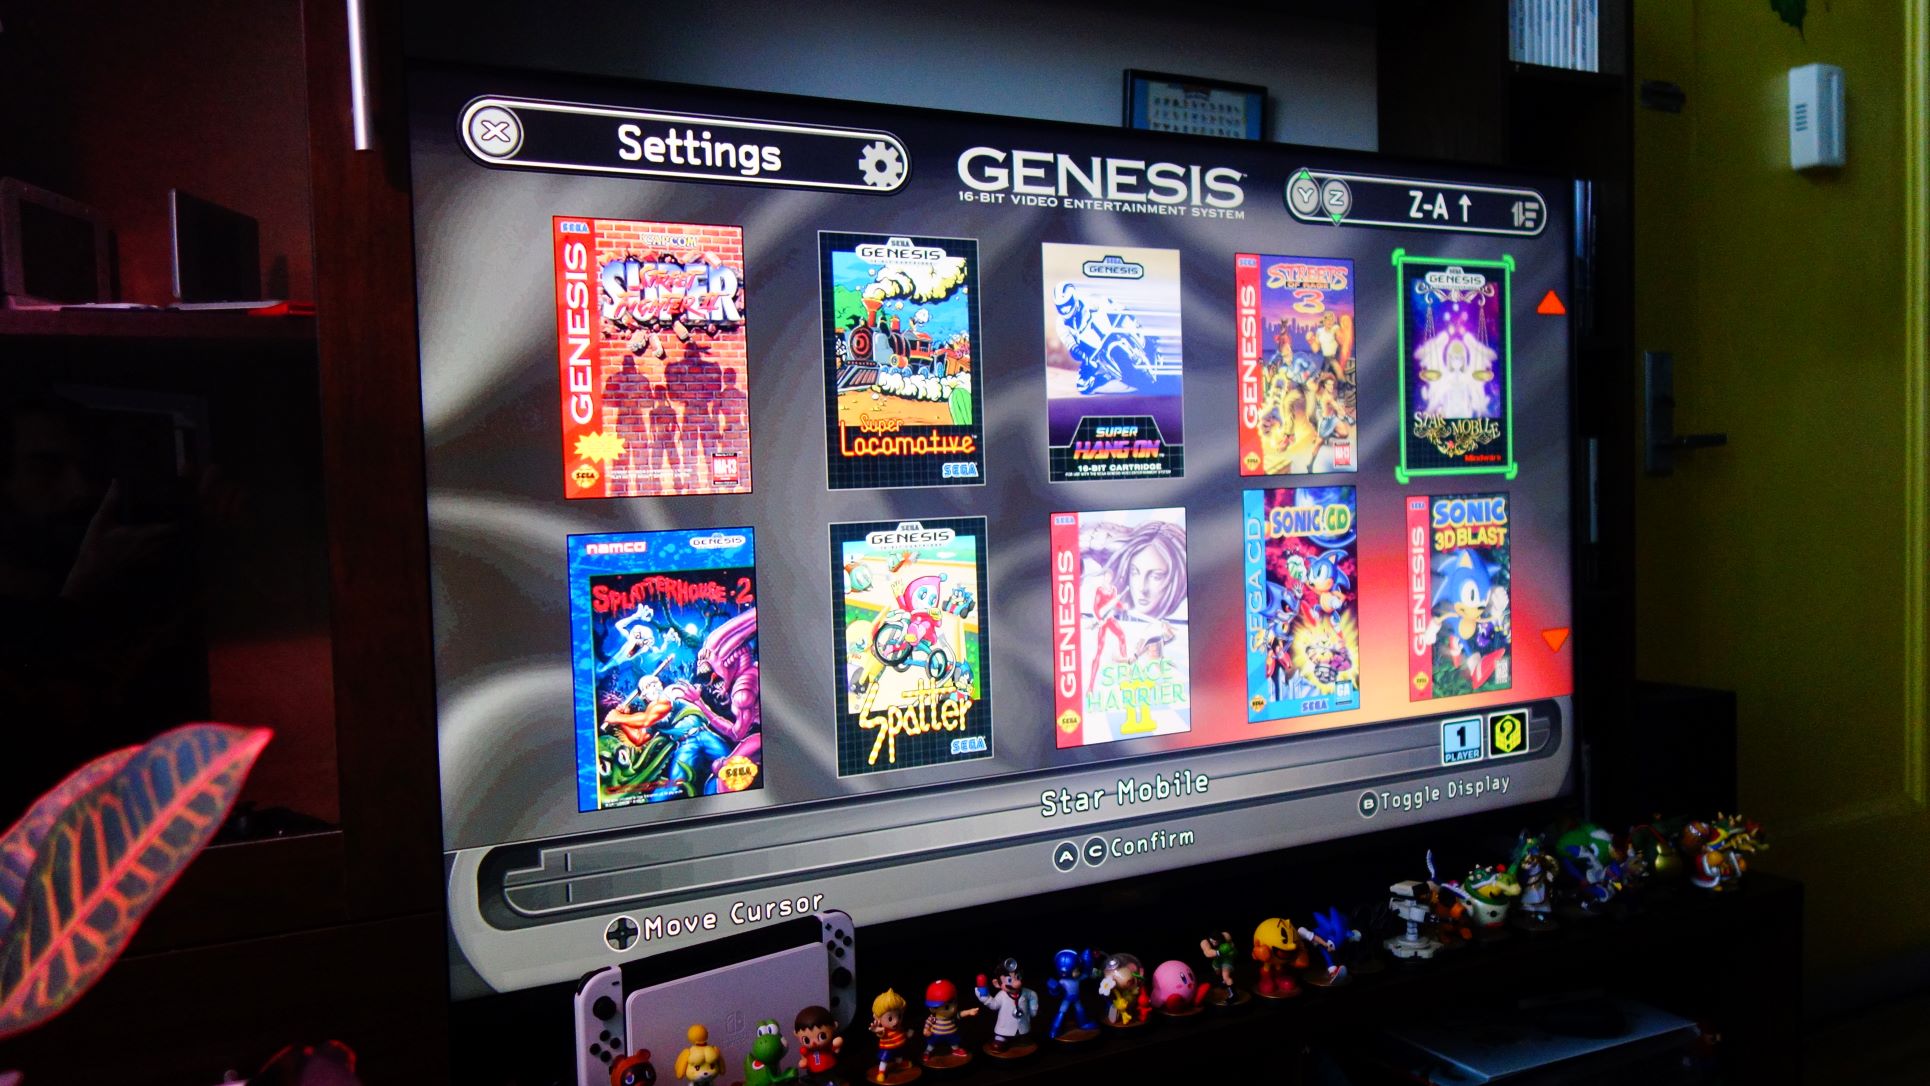 A tela de seleção de jogos de um Sega Genesis Mini 2 aparece em uma TV.